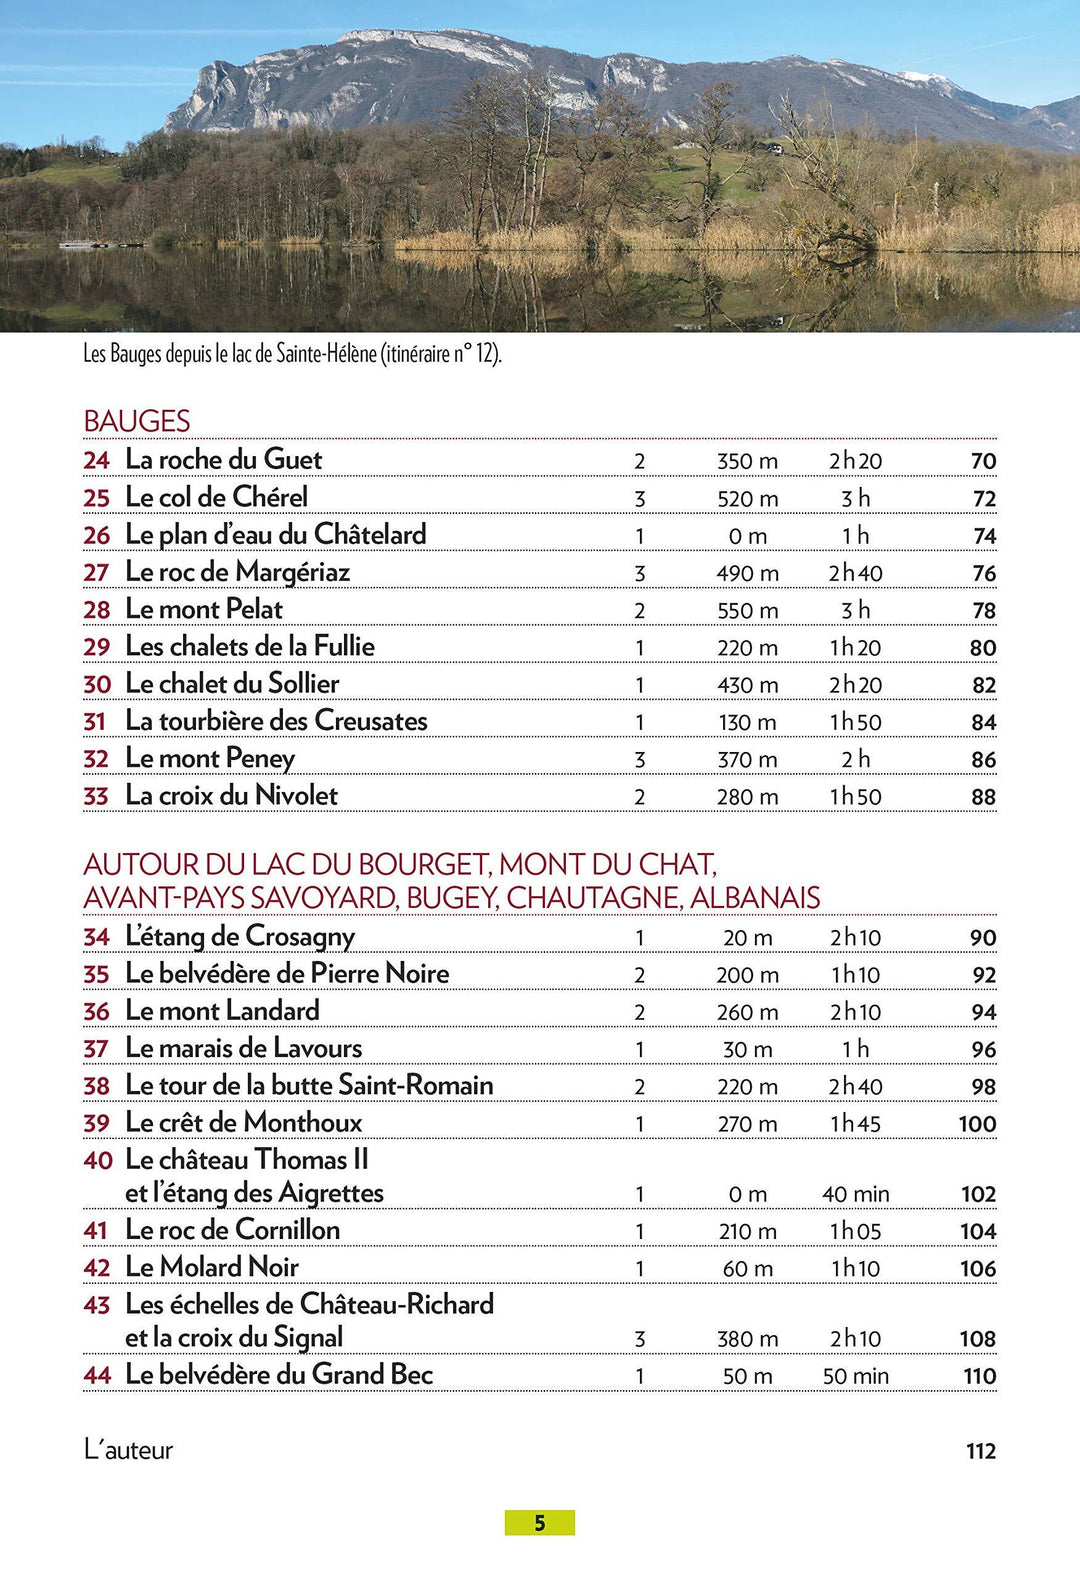 Guide de balades - Autour de Chambéry, Aix-les-bains | Glénat - P'tit Crapahut guide de randonnée Glénat 